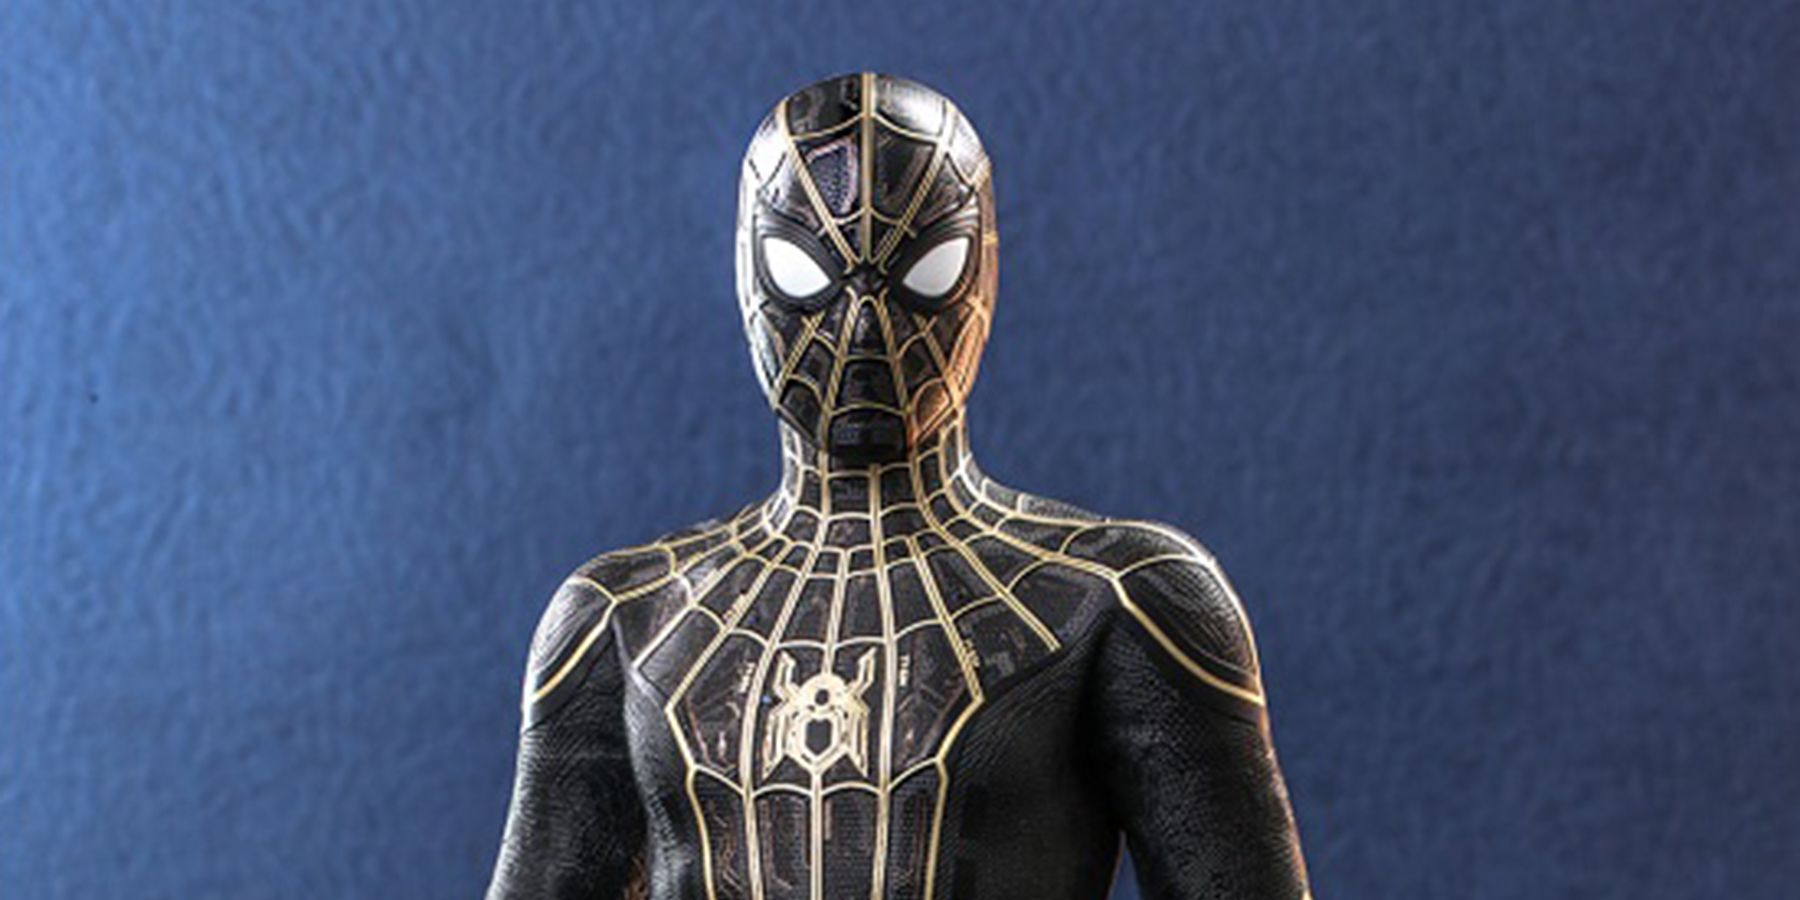 Spider-Man No Way Home Toy Black Suit Header